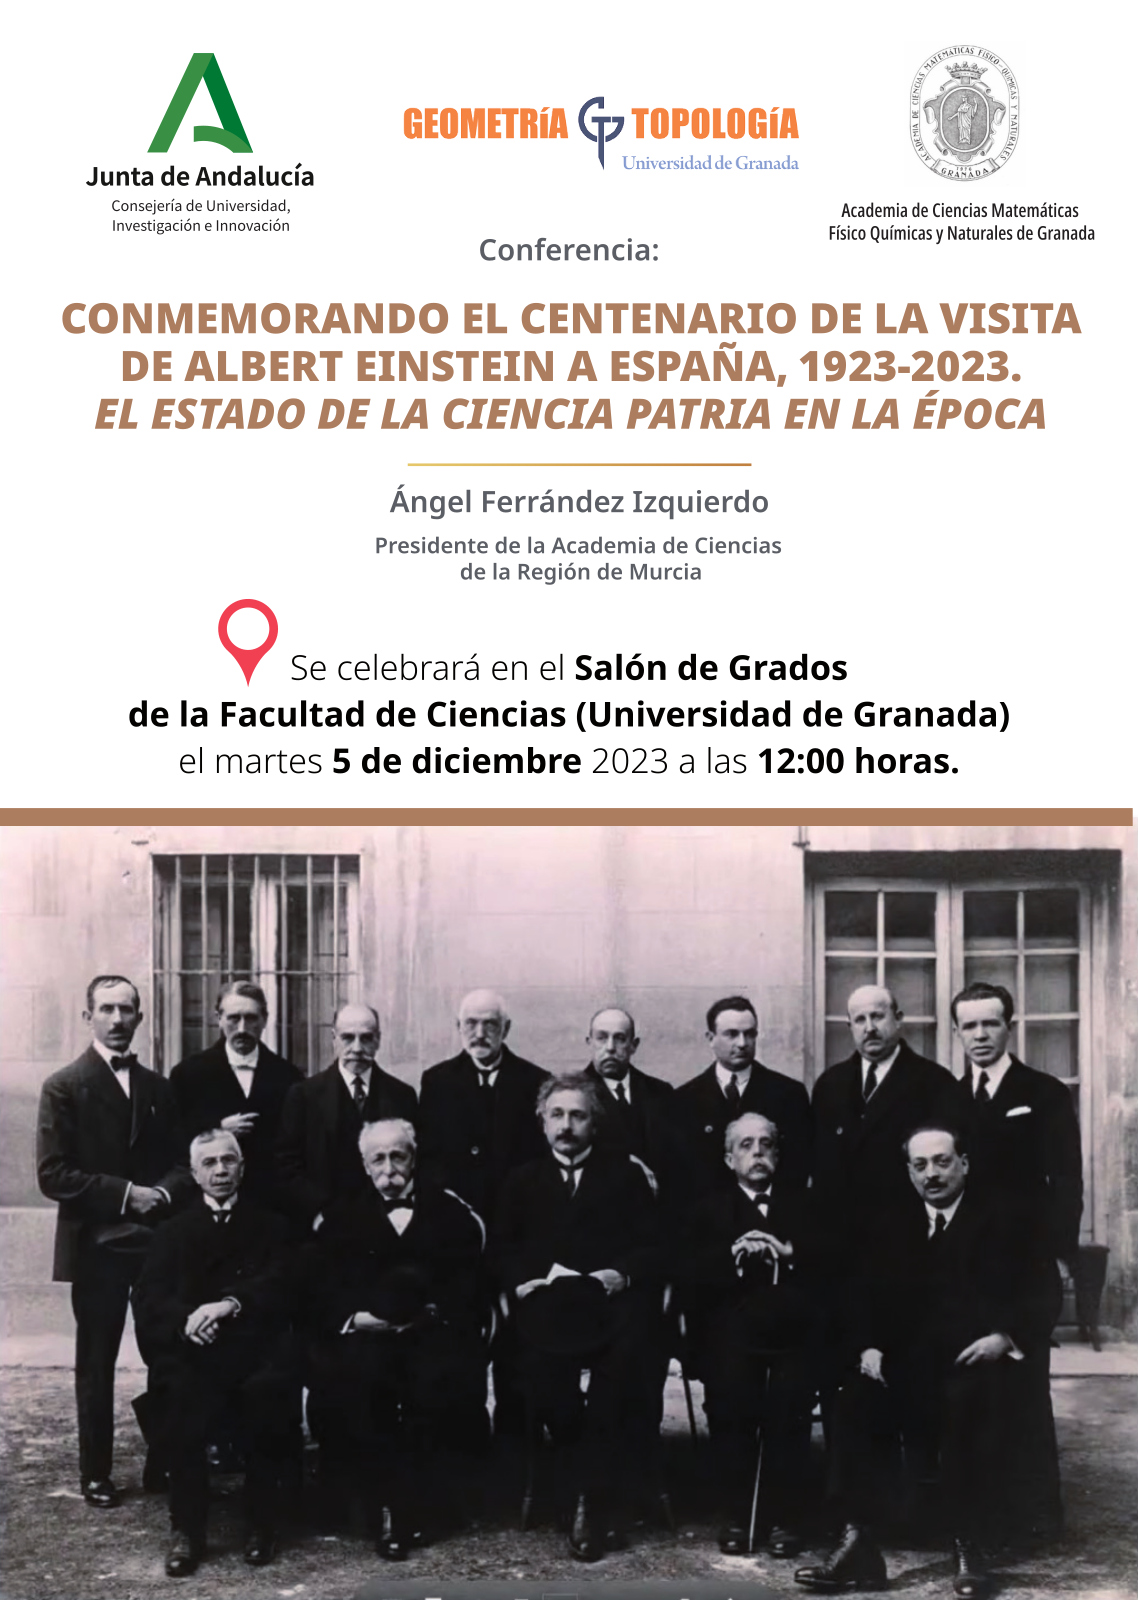 Conmemorando el centenario de la visita de Albert Einstein a España, 1923-2023. El estado de la Ciencia Patria en la época.